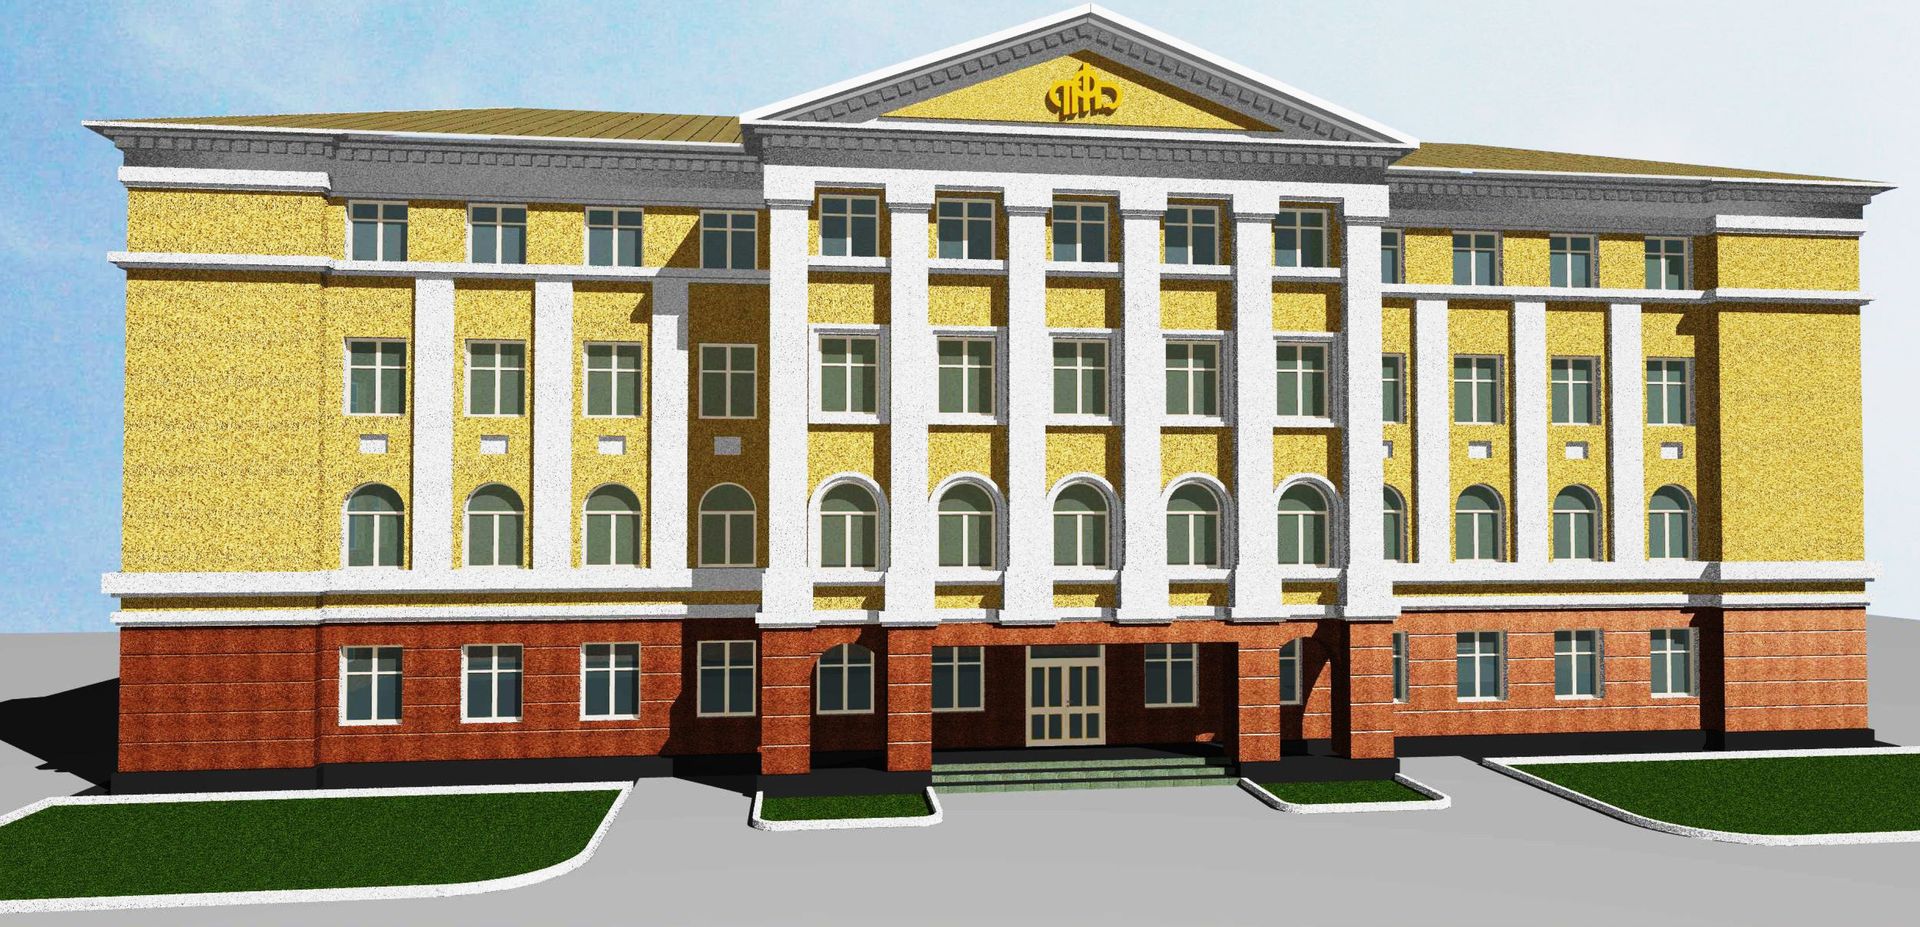 Фото 1 из 1.<br/>Архитектурное решение фасадов здания в стиле классической русской архитектуры, что продиктовано расположению здания в исторической части города